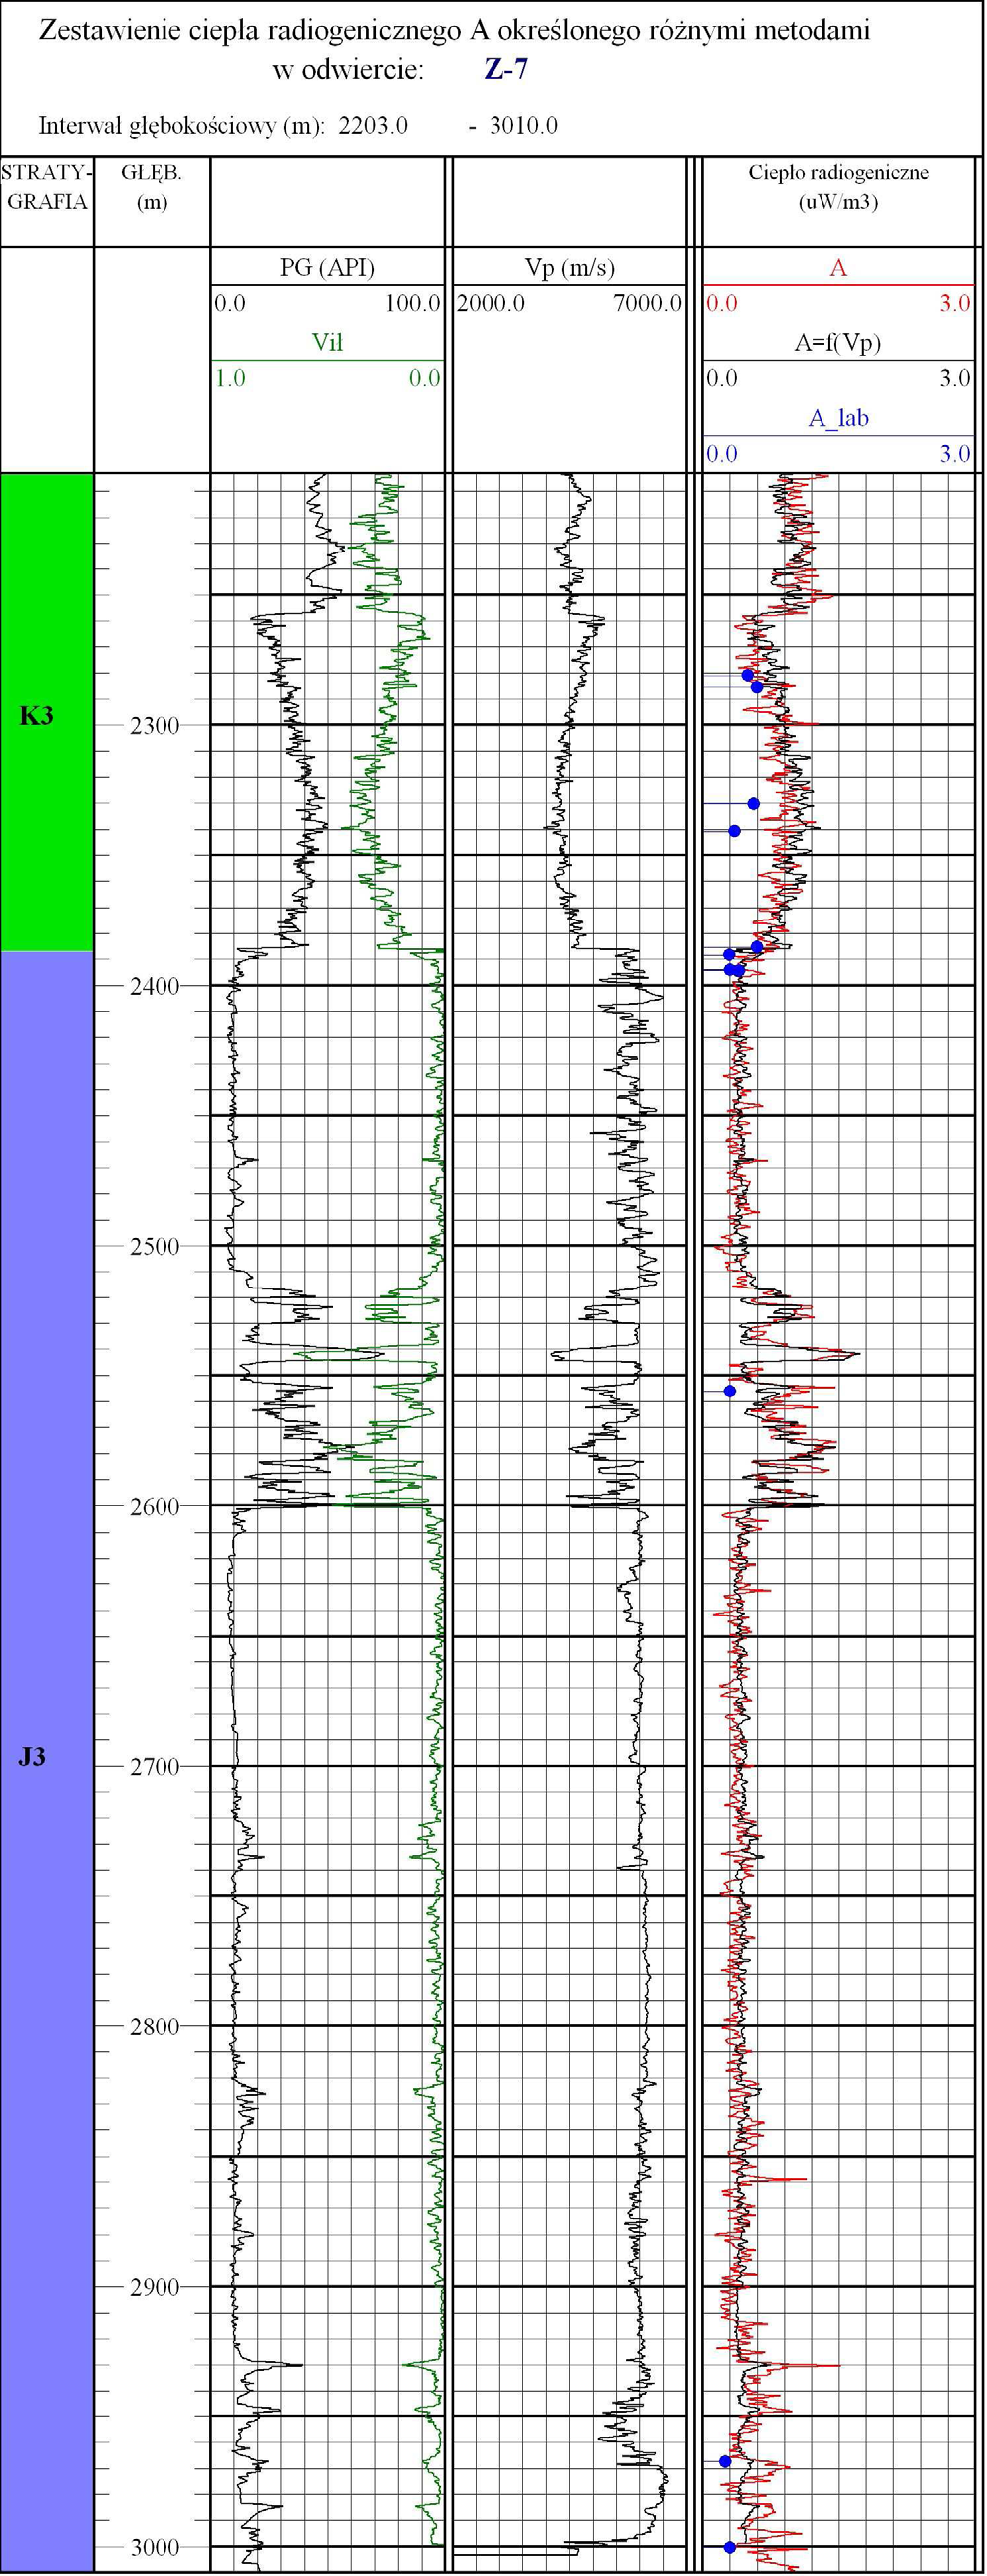 NAFTA-GAZ Rys. 13. Zestawienie ciepła radiogenicznego A określonego różnymi sposobami w odwiercie G-3; punkty oznaczają wartości parametrów wyznaczone z badań laboratoryjnych Tablica 2.